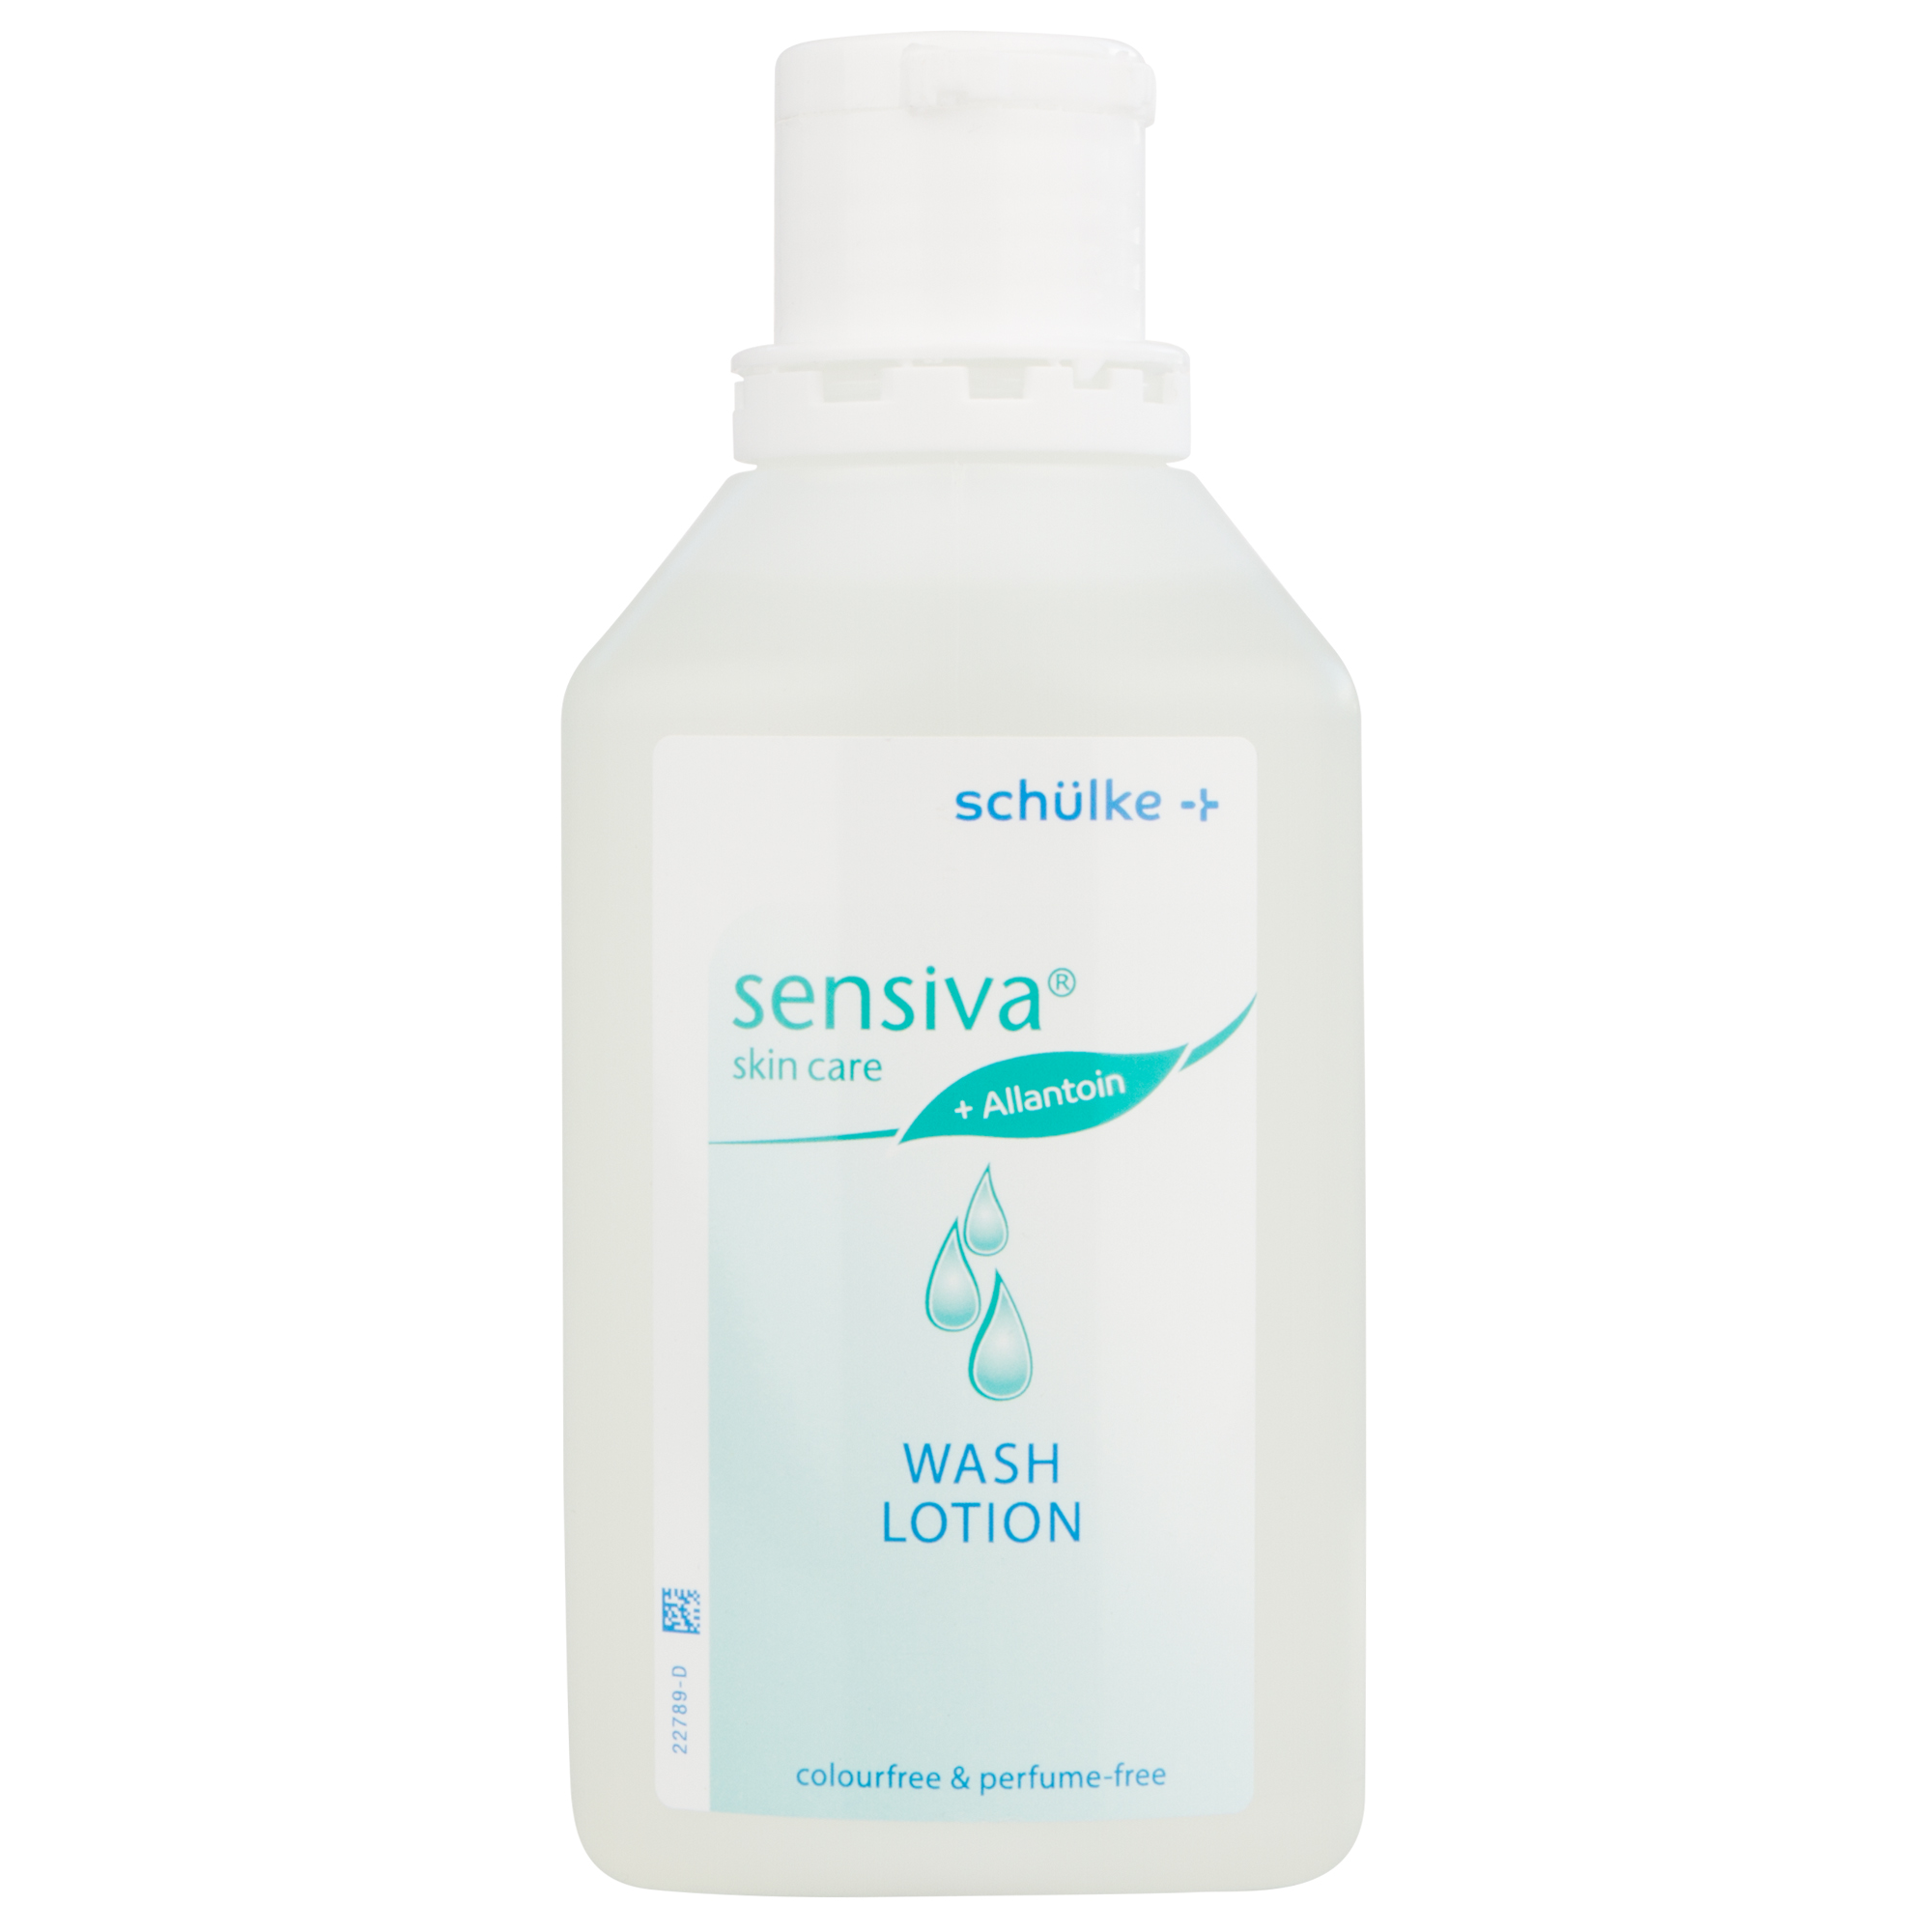 sensiva wash lotion - Waschlotion von Schülke. Hautschonendes, farbstoff- und parfümfreies Präparat mit Allantoin zur Hände- und Körperreinigung. 500 ml, 1000 ml oder 5000 ml.